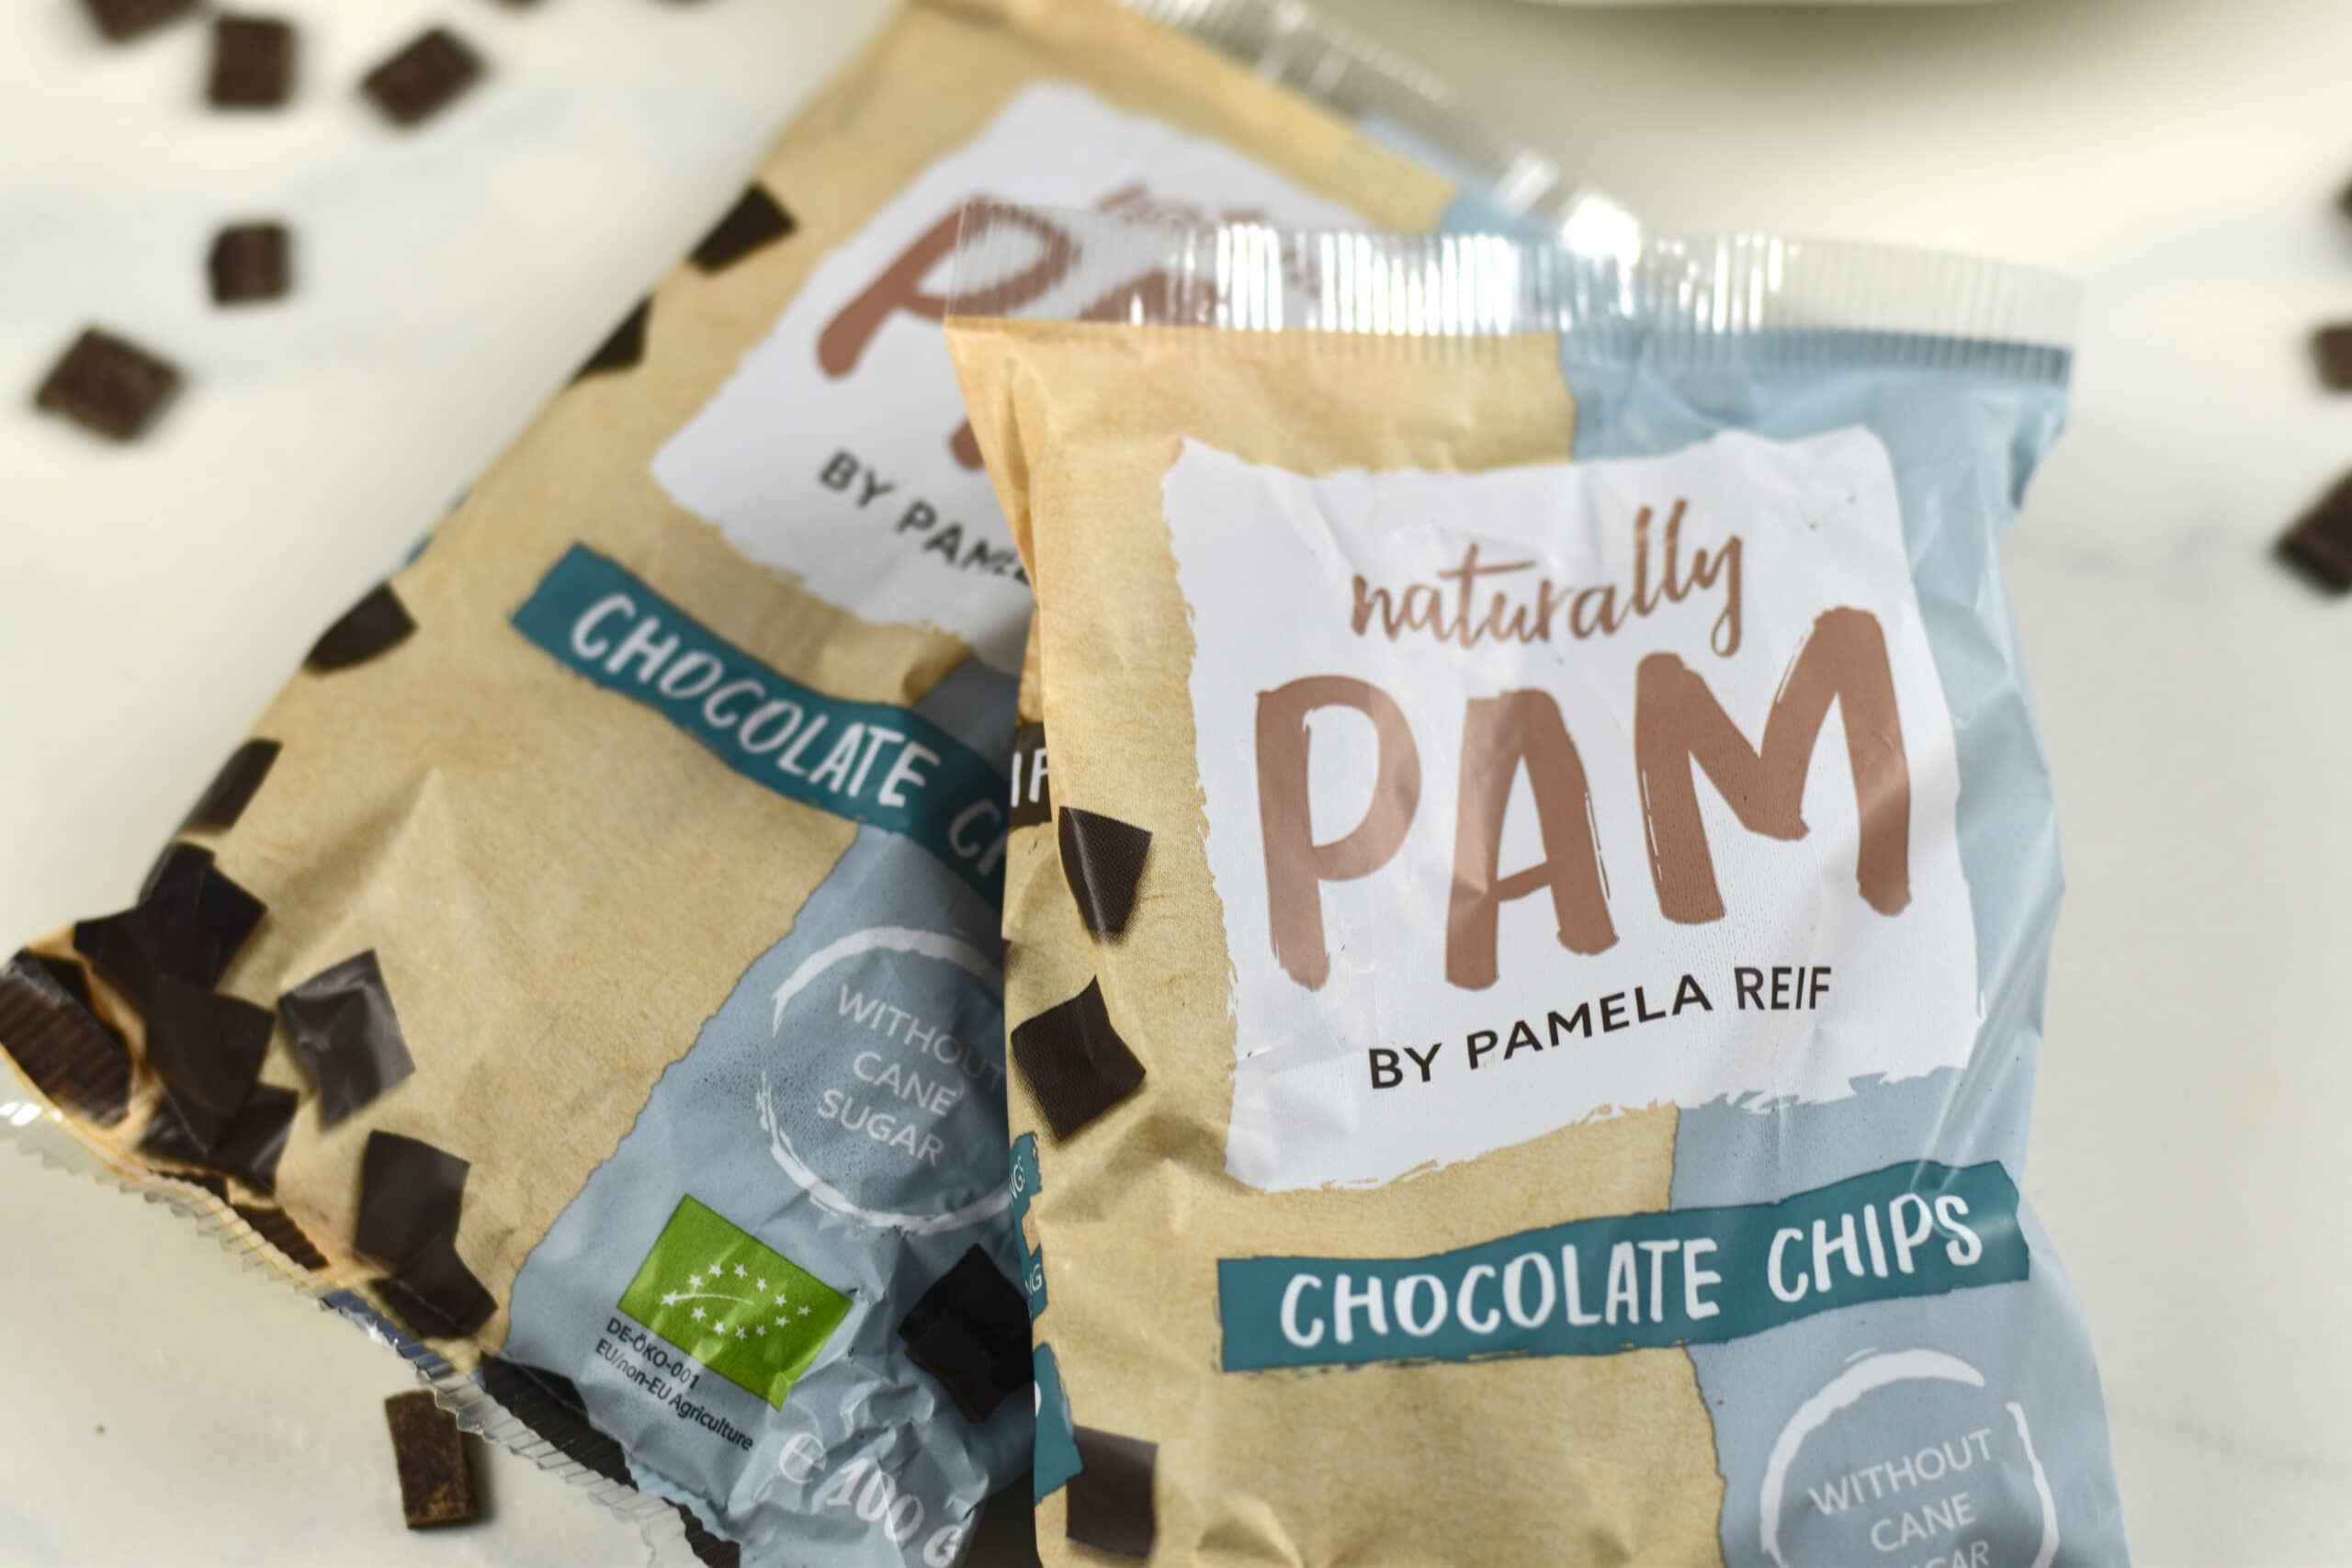 Naturally Pam Chocolate Chips von Pamela Reif & Rezept